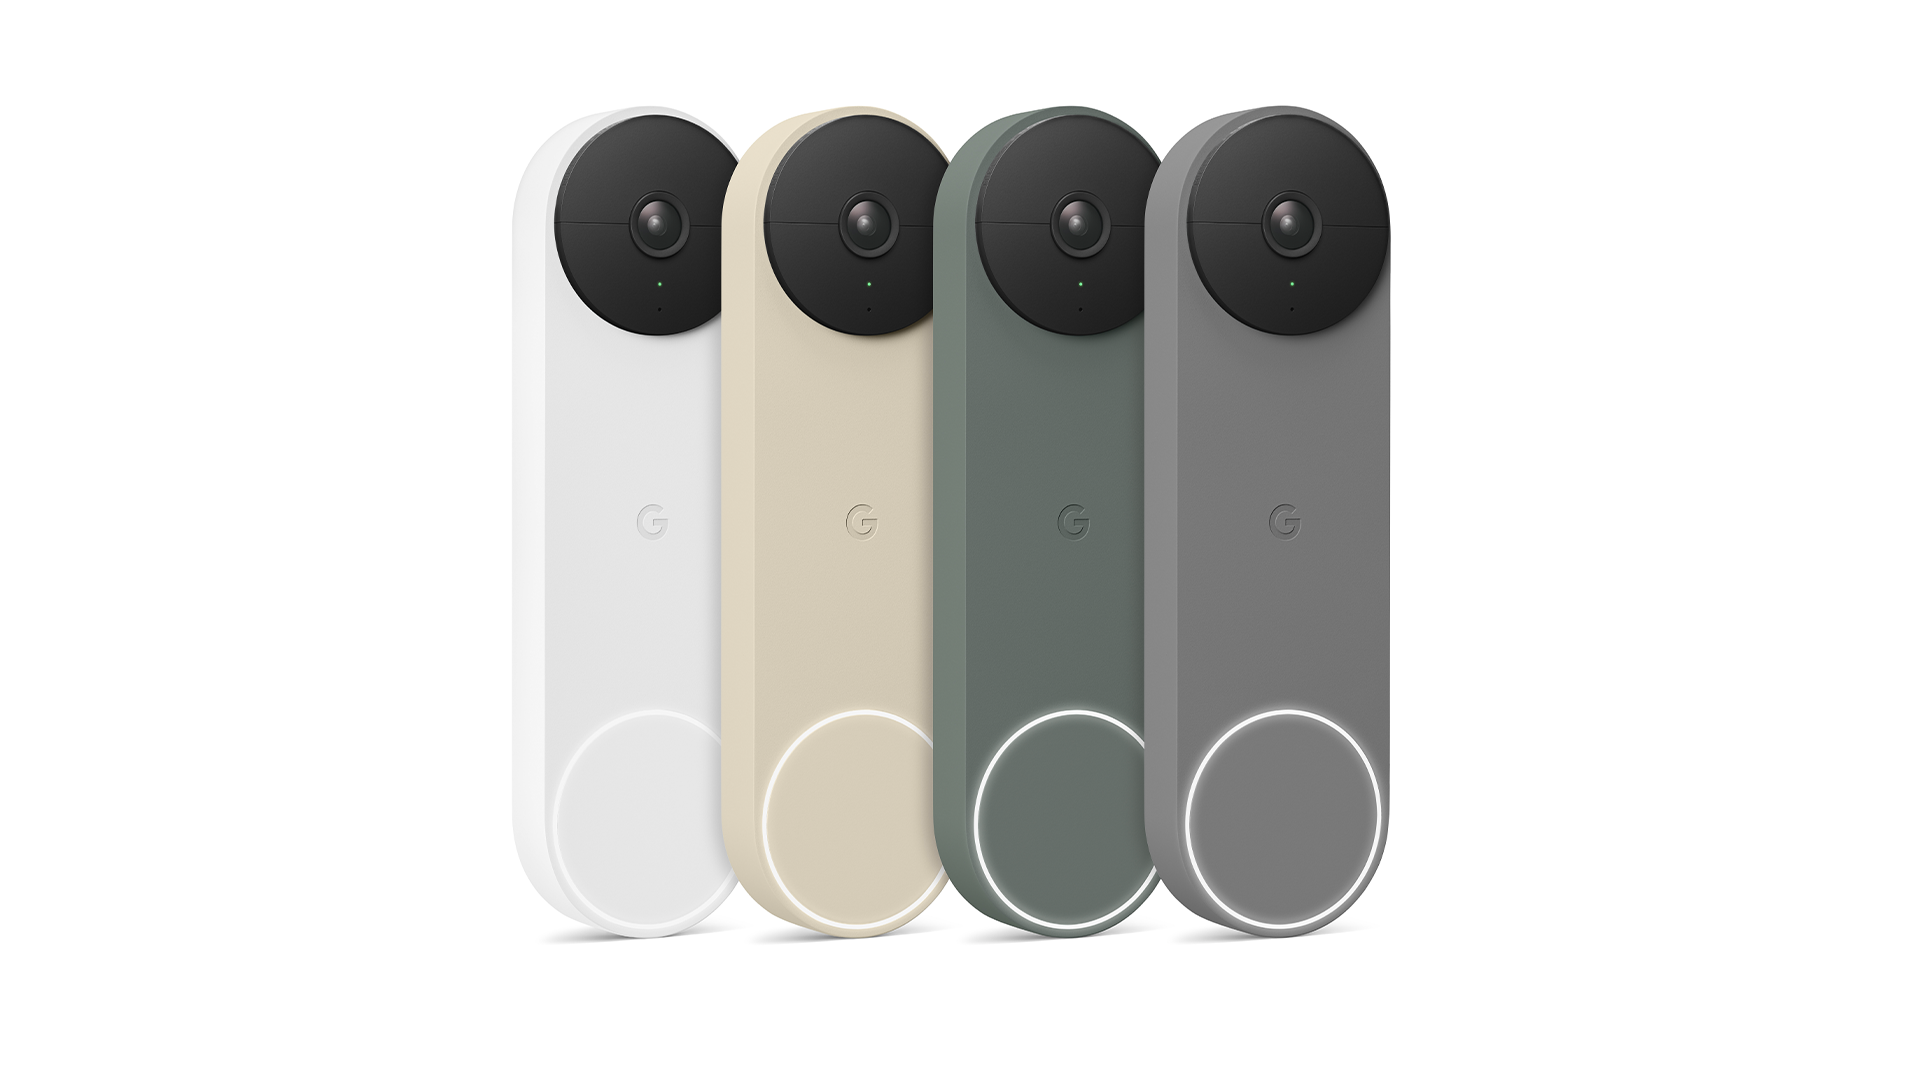 Google Nest-dörrklockan finns i fyra färger.